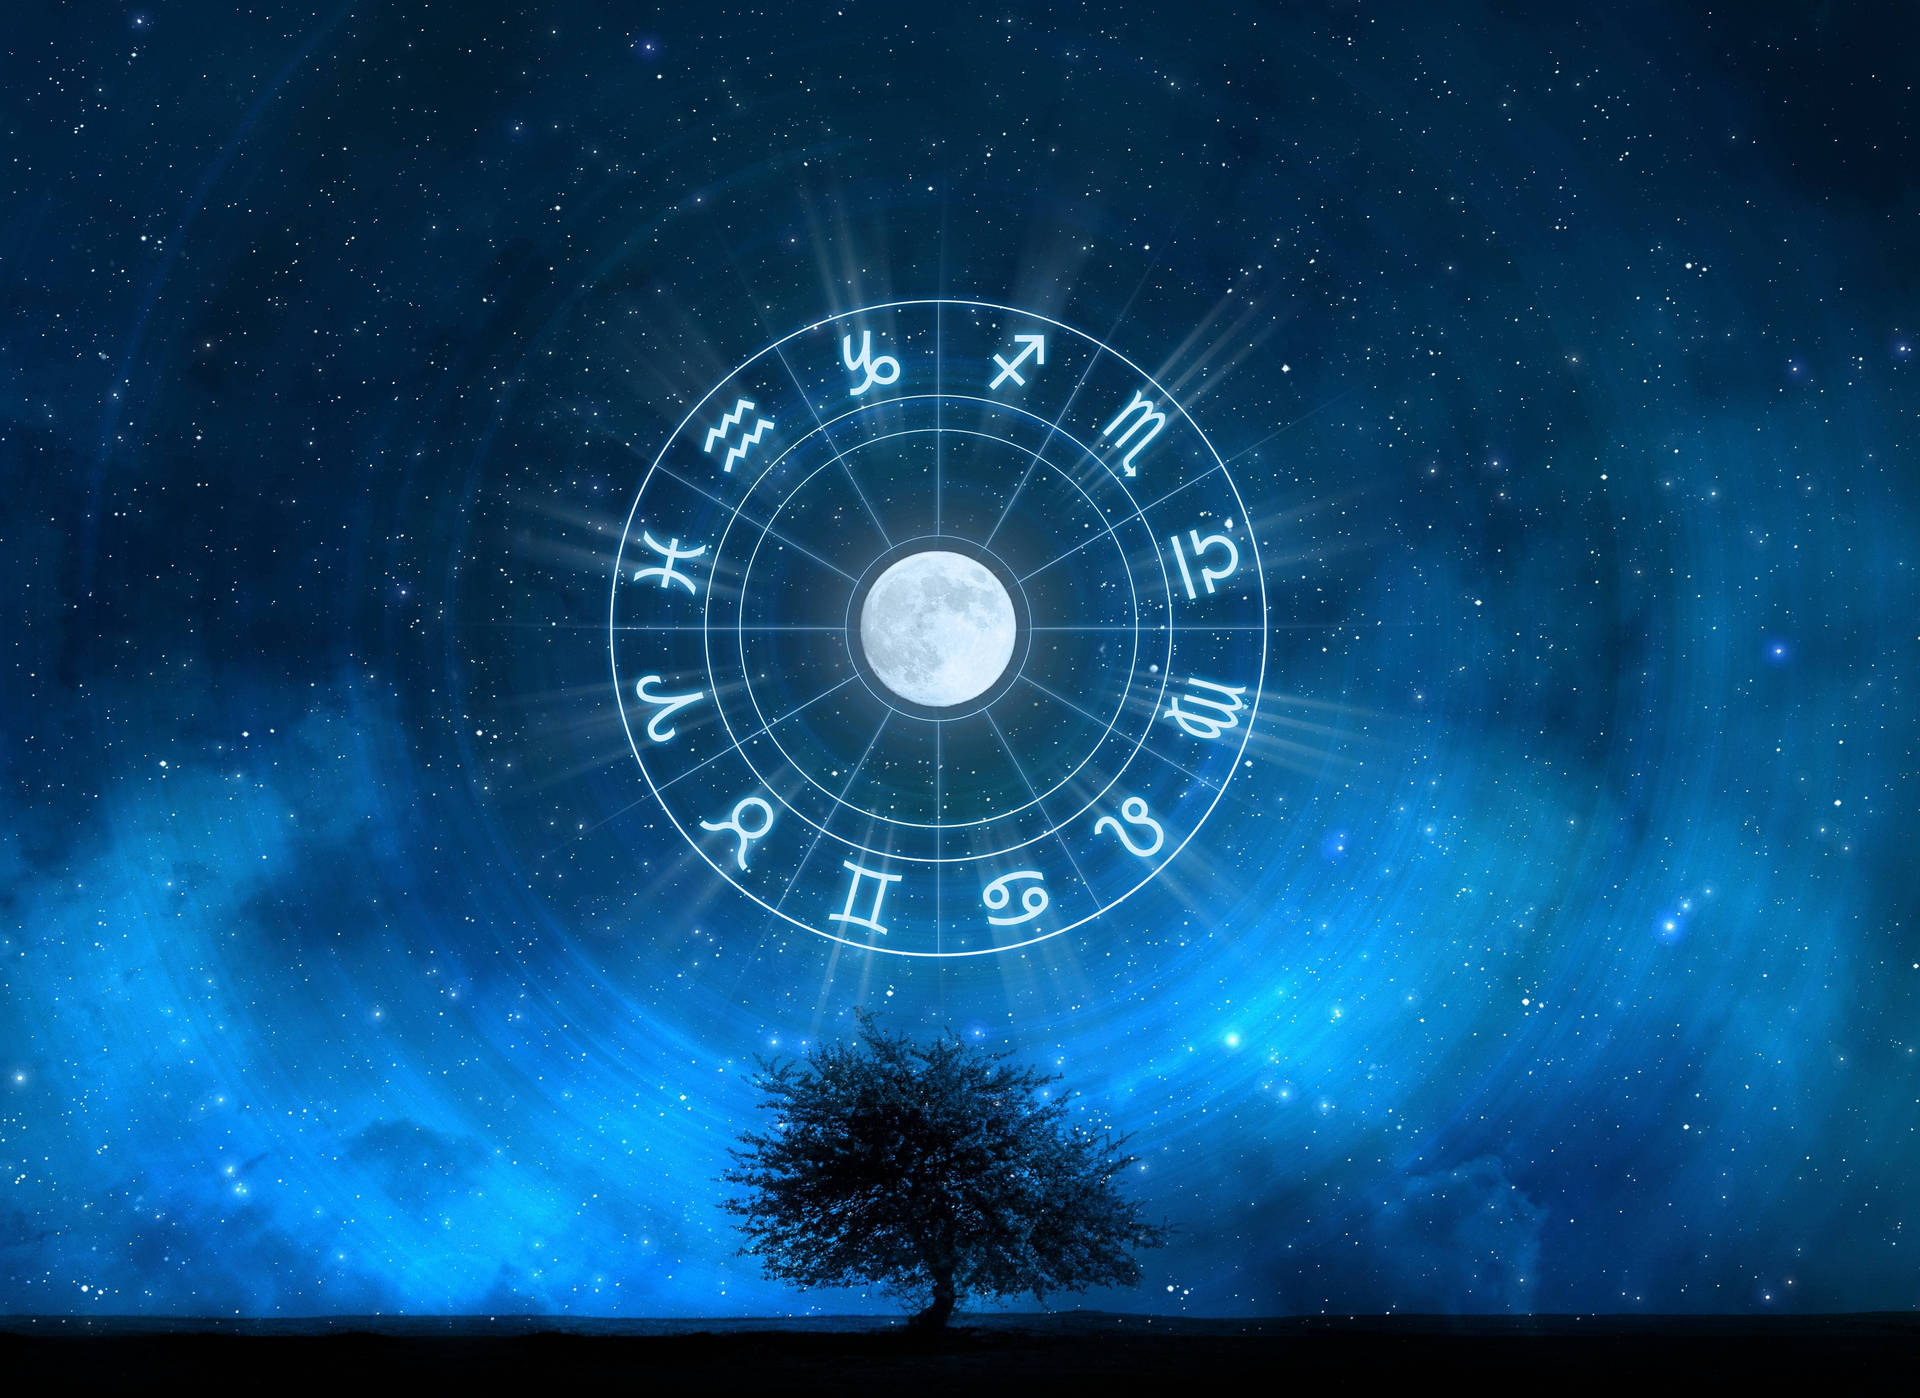 Horoscope Moon Rising Background